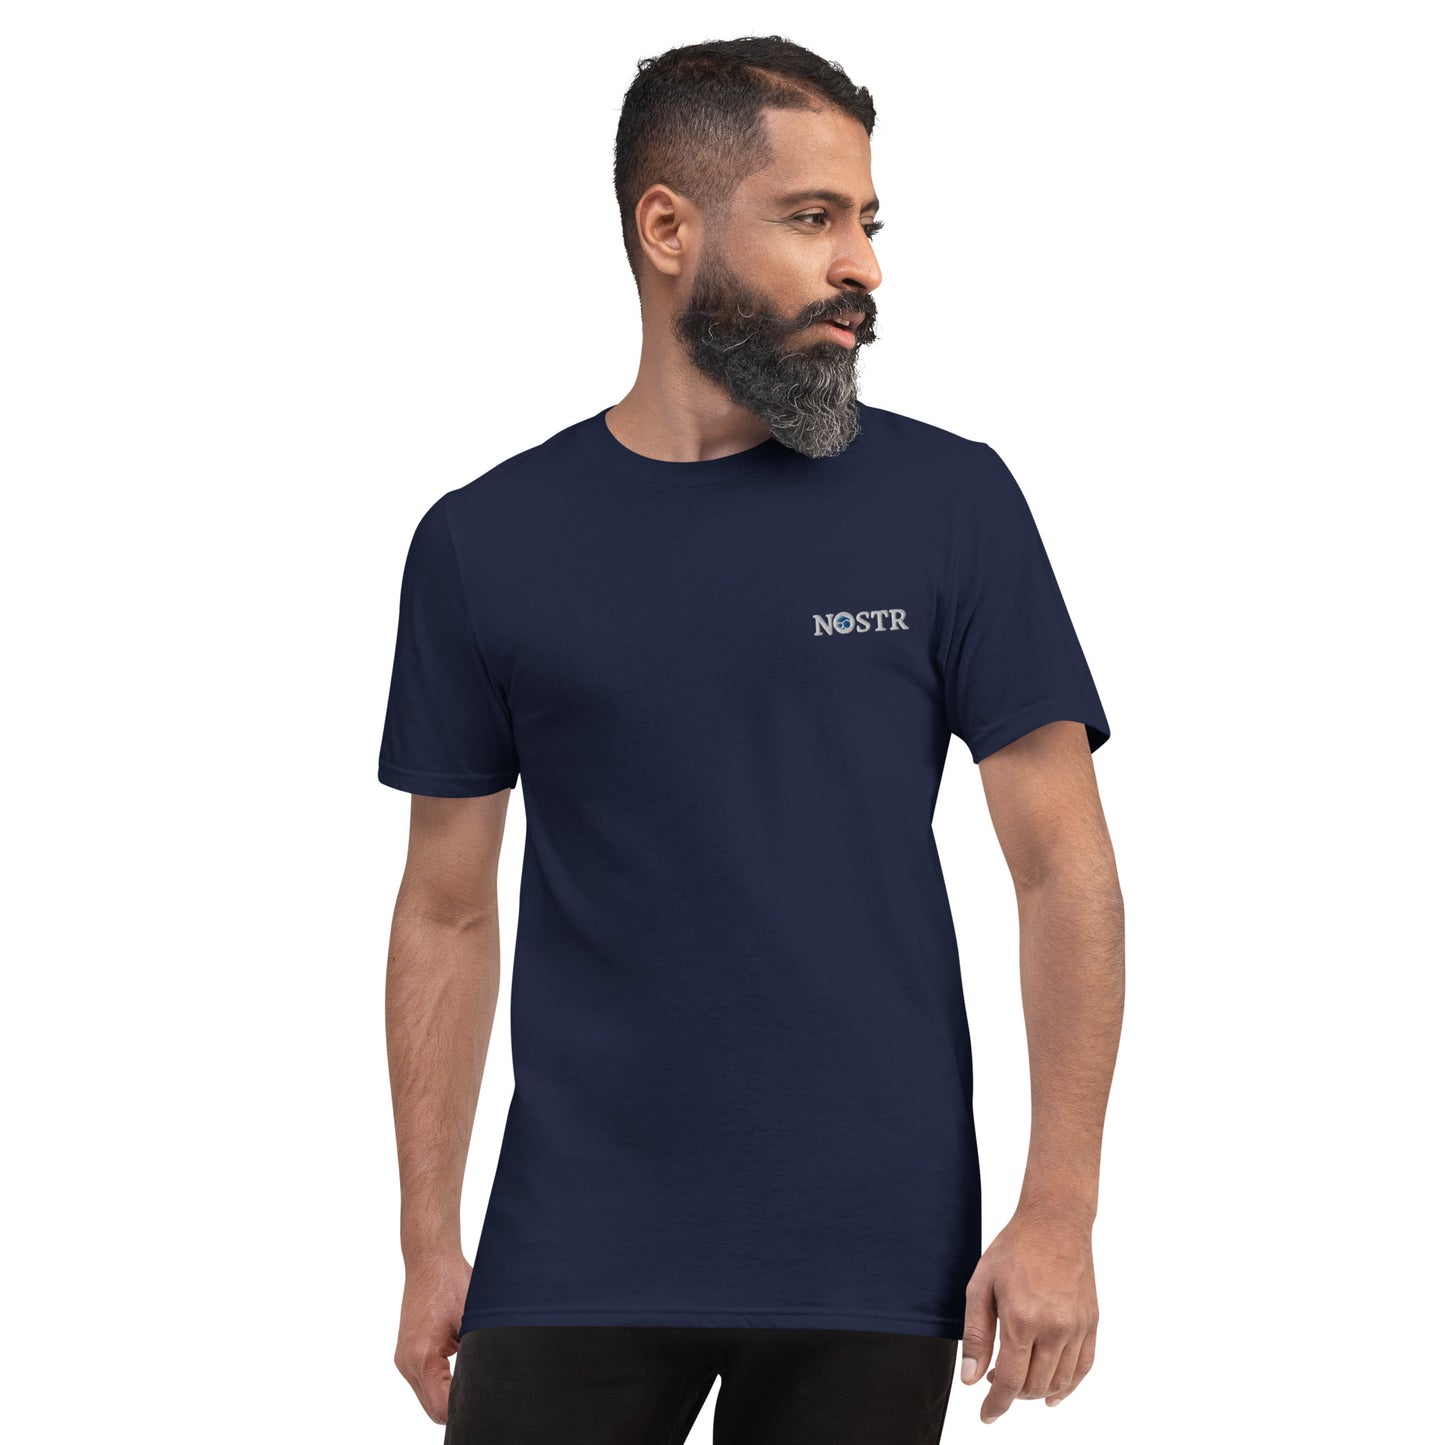 FLUX “Flux x Hostr” T-Shirt